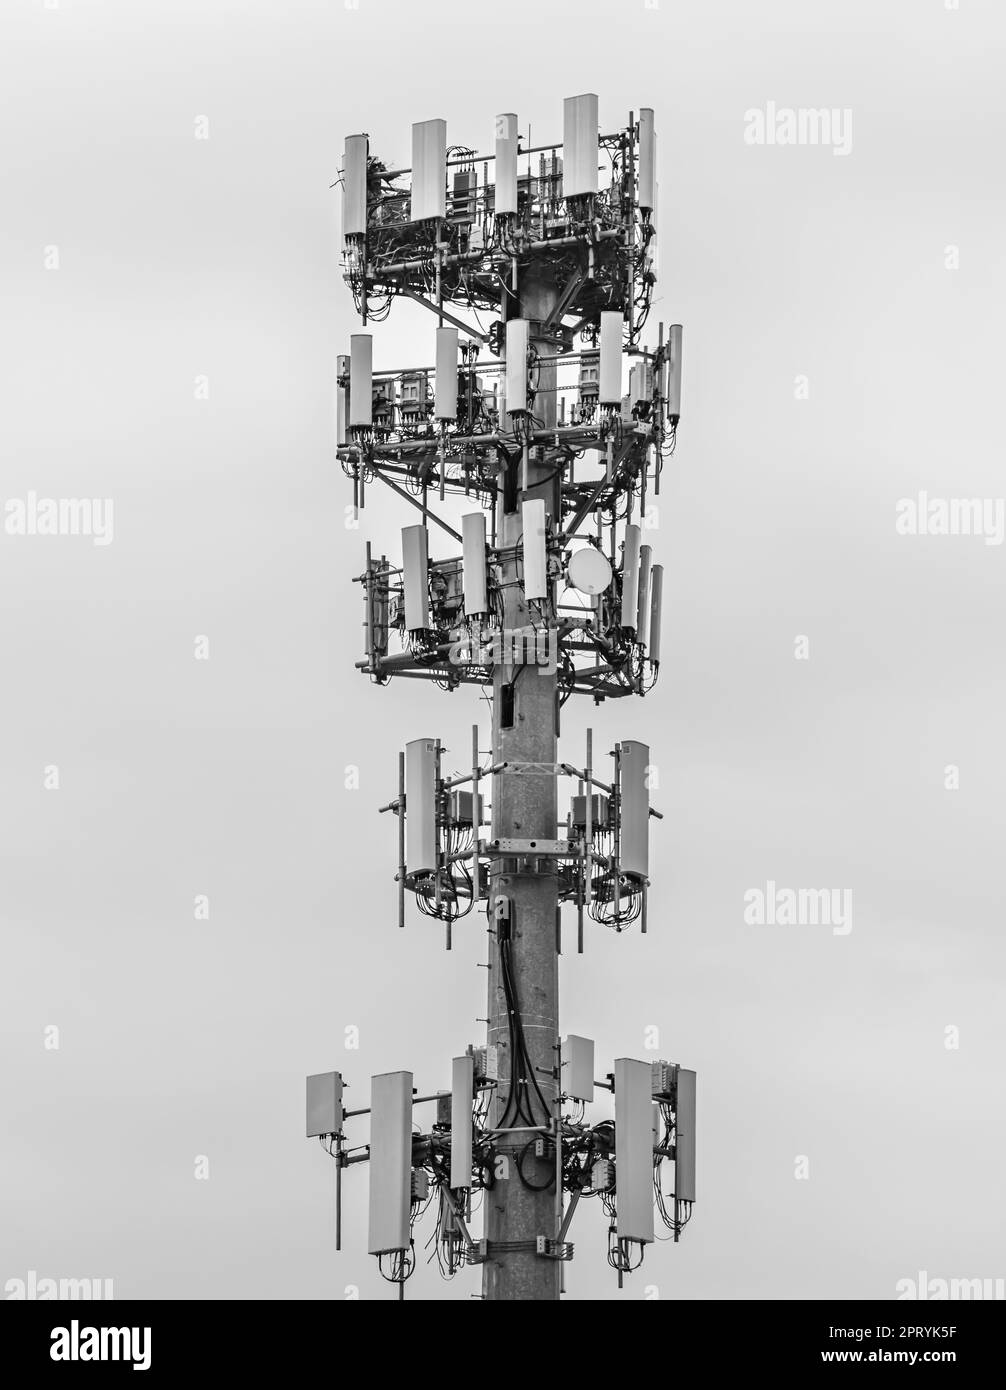 Immagine in bianco e nero della parte superiore della torre di un telefono cellulare Foto Stock